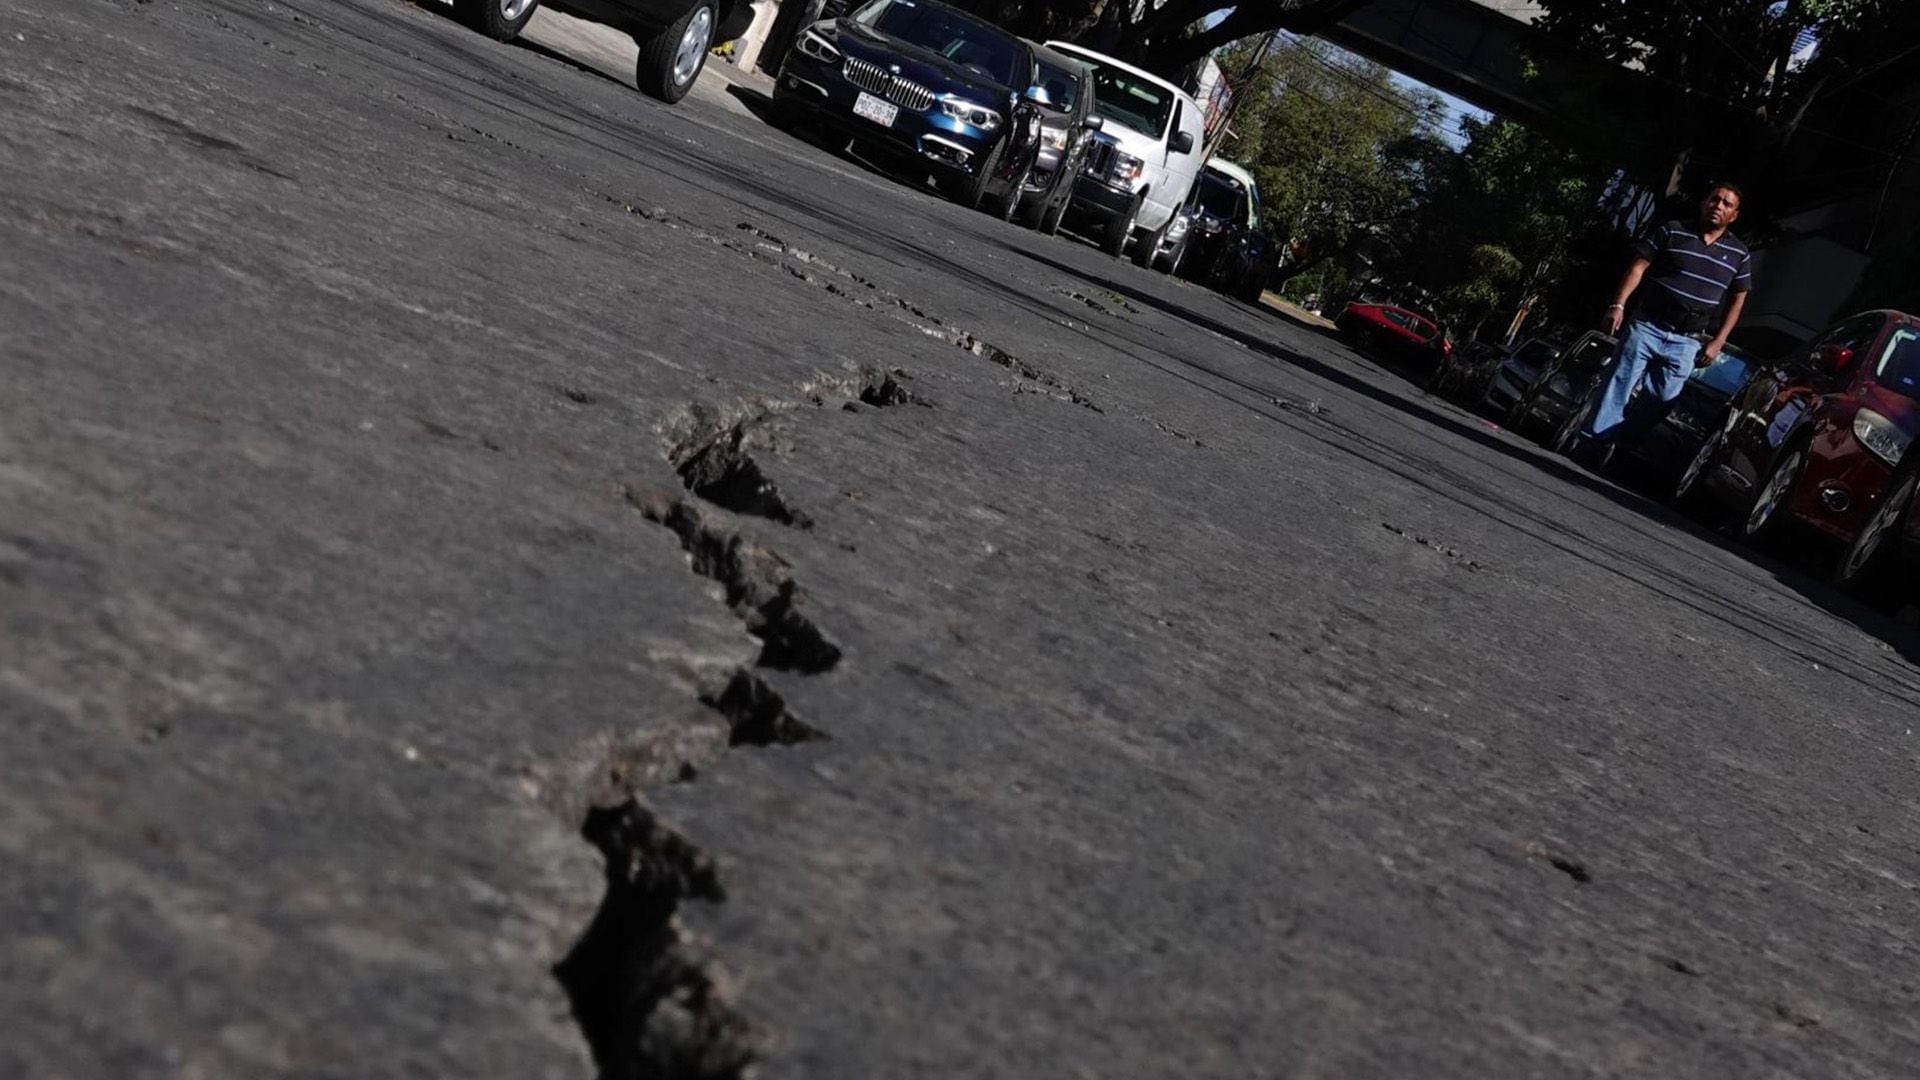 La falla podría provocar un sismo de gran magnitud en la CDMX